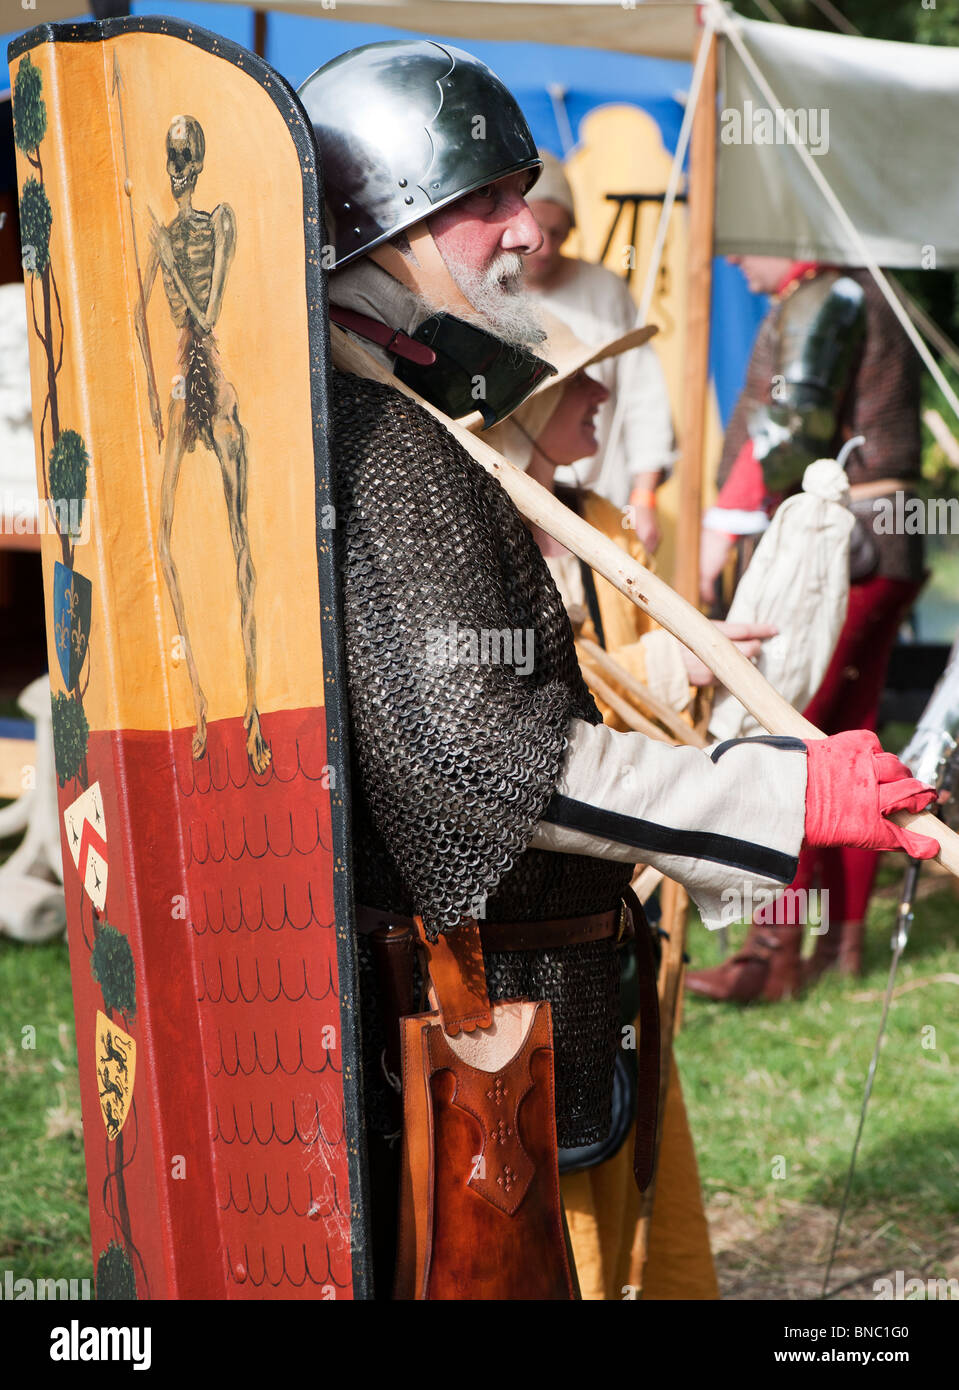 Knight avec un bouclier à la Tewkesbury fête médiévale 2010, Gloucestershire, Angleterre Banque D'Images